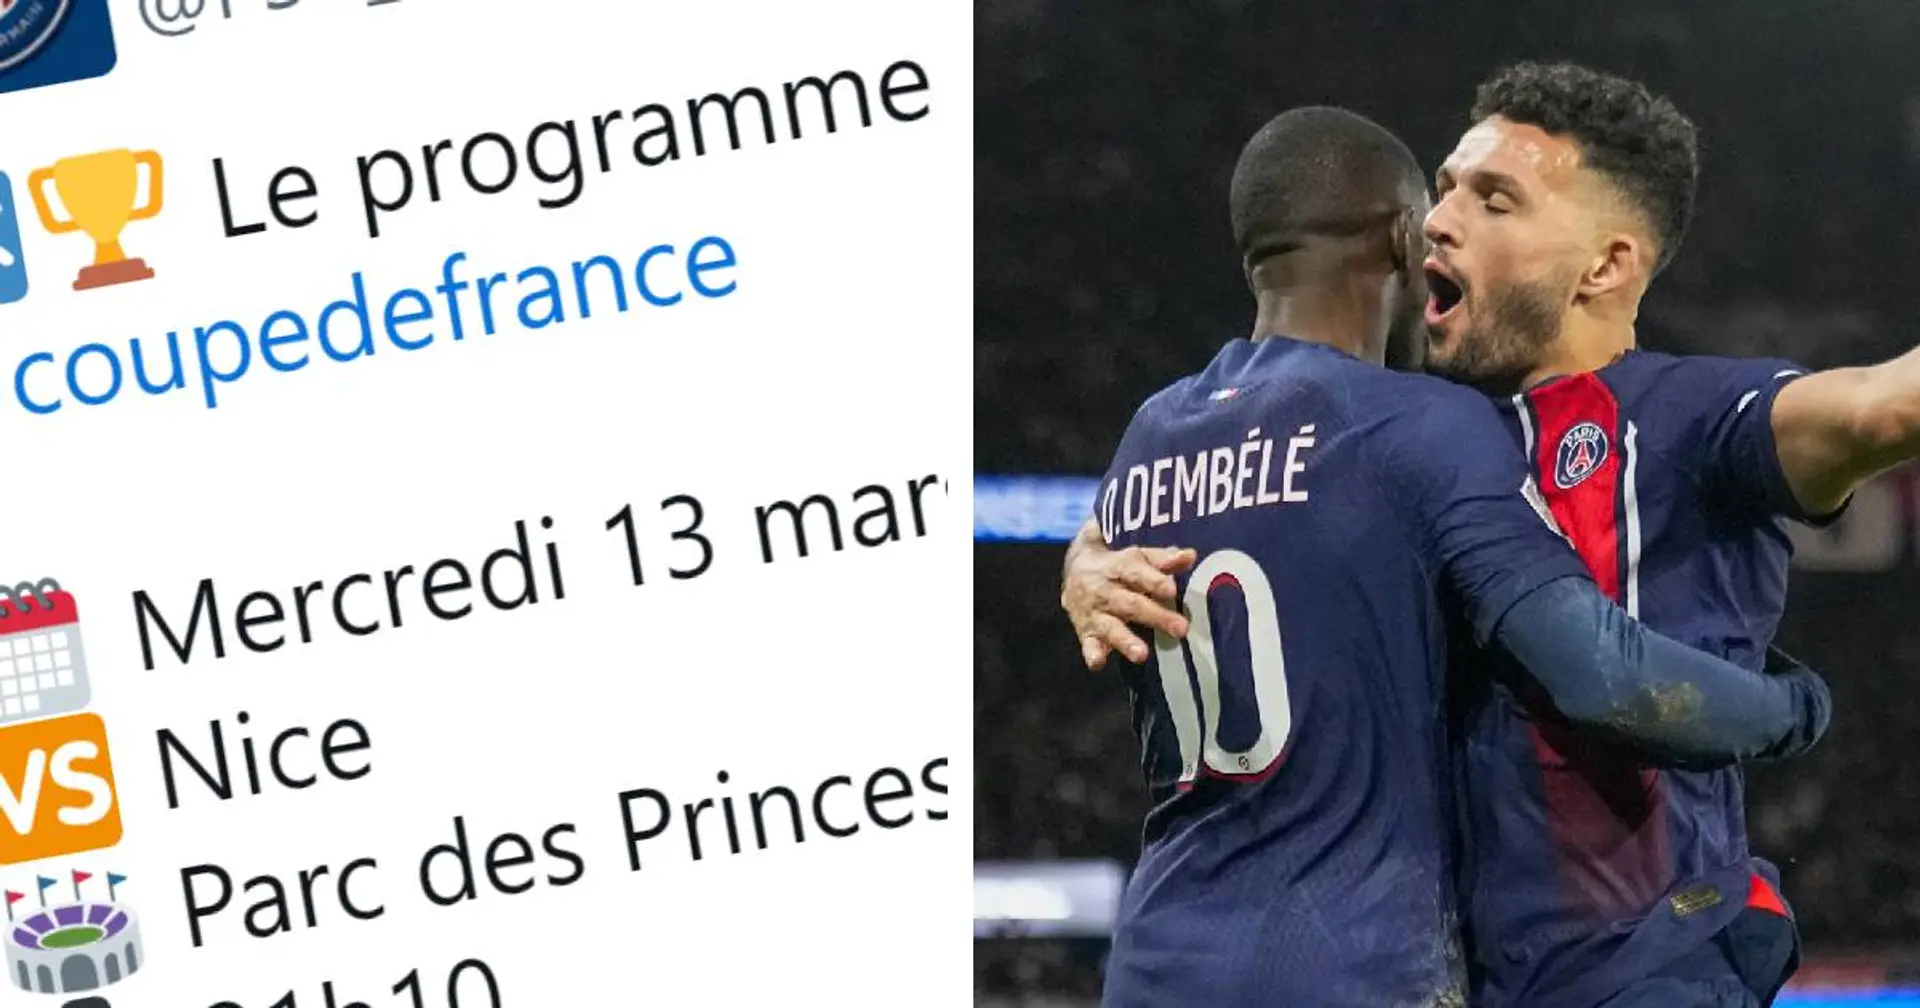 Le quart de finale de Coupe de France entre le PSG et Nice reporté - pourquoi c'est une bonne nouvelle ? Explication